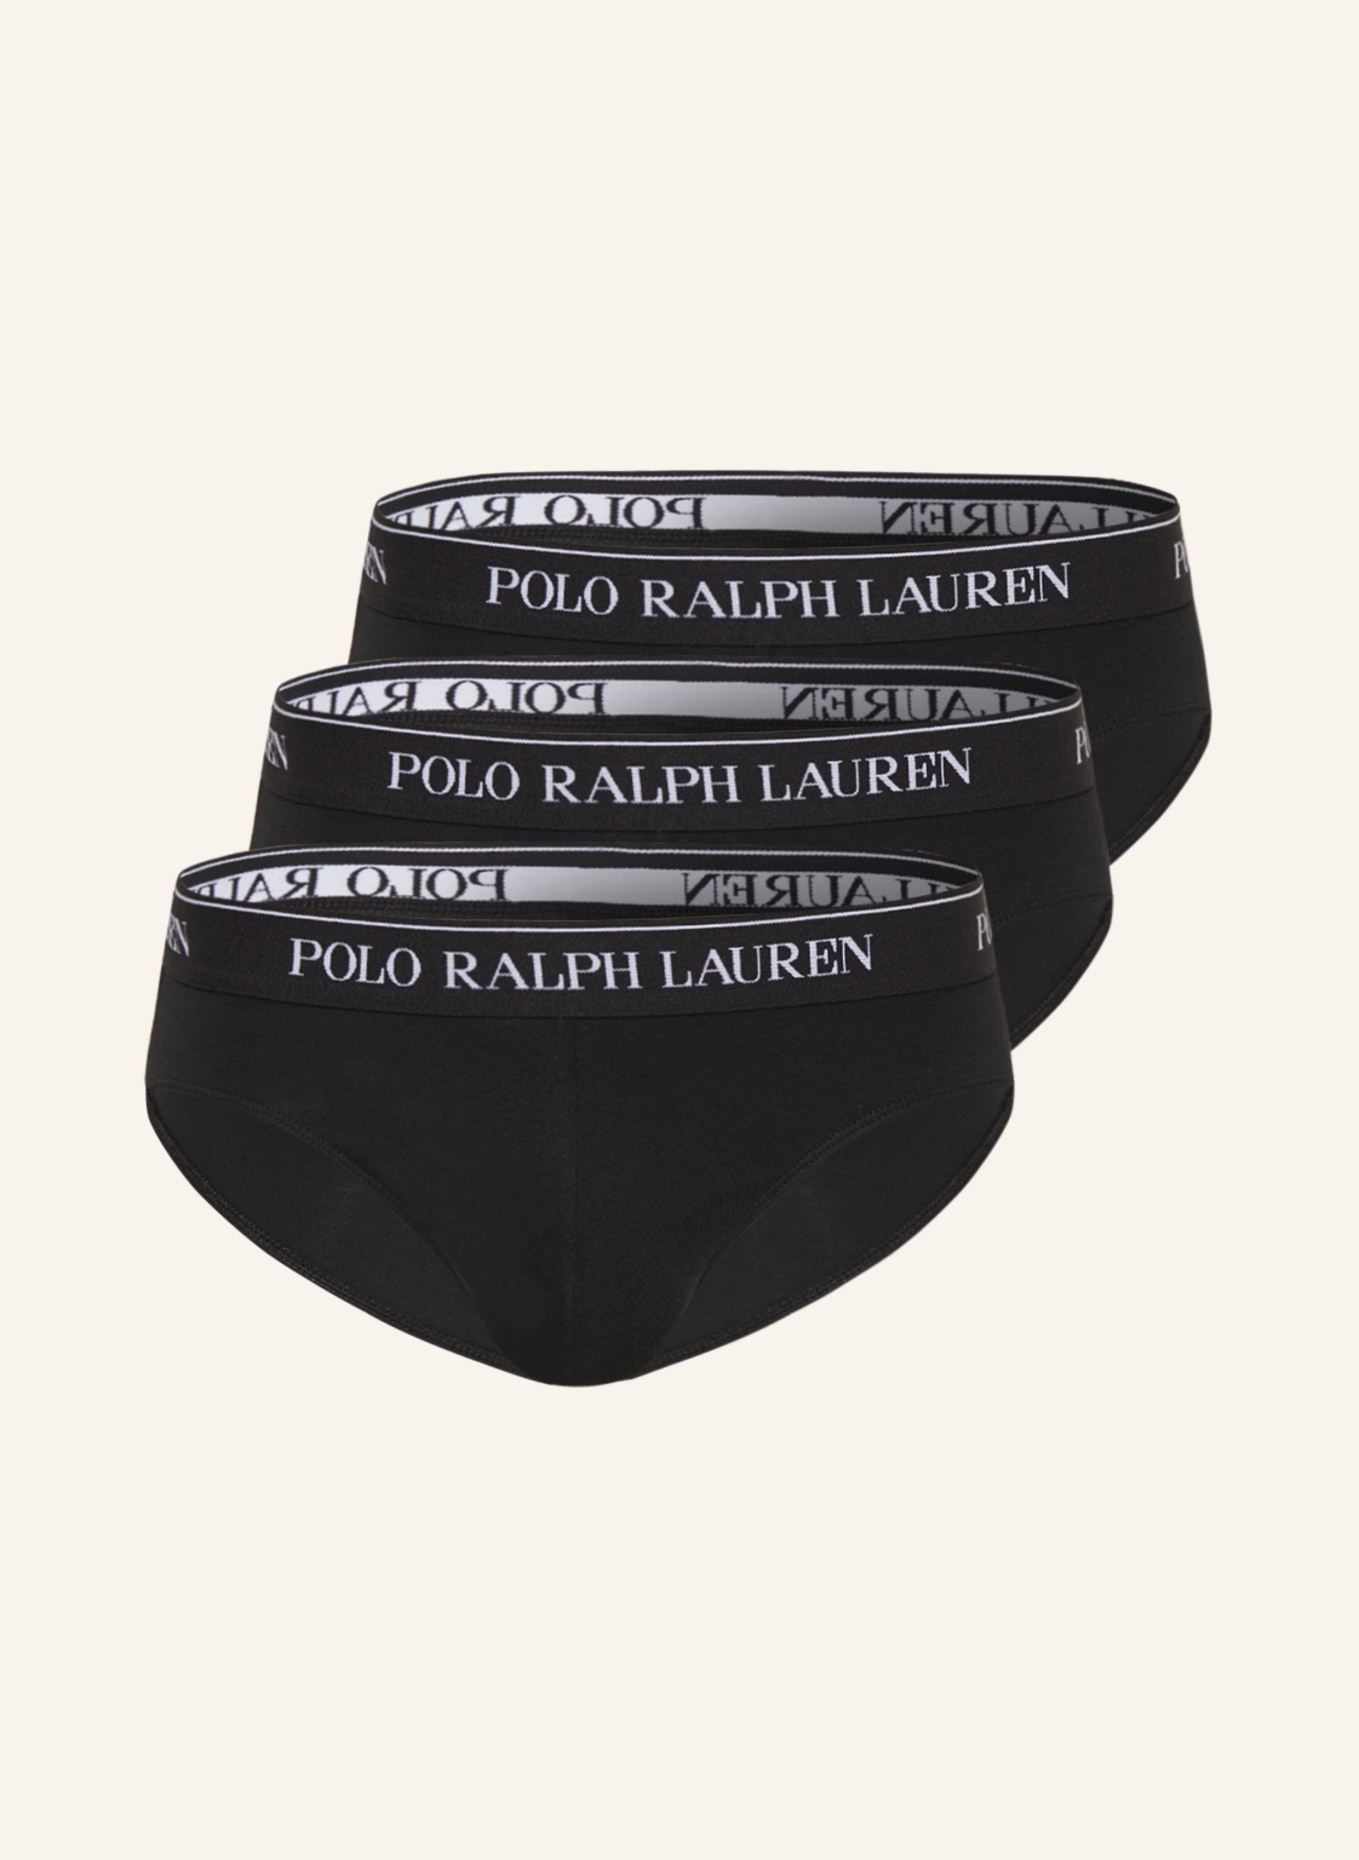 POLO RALPH LAUREN 3-pack briefs , Color: BLACK (Image 1)